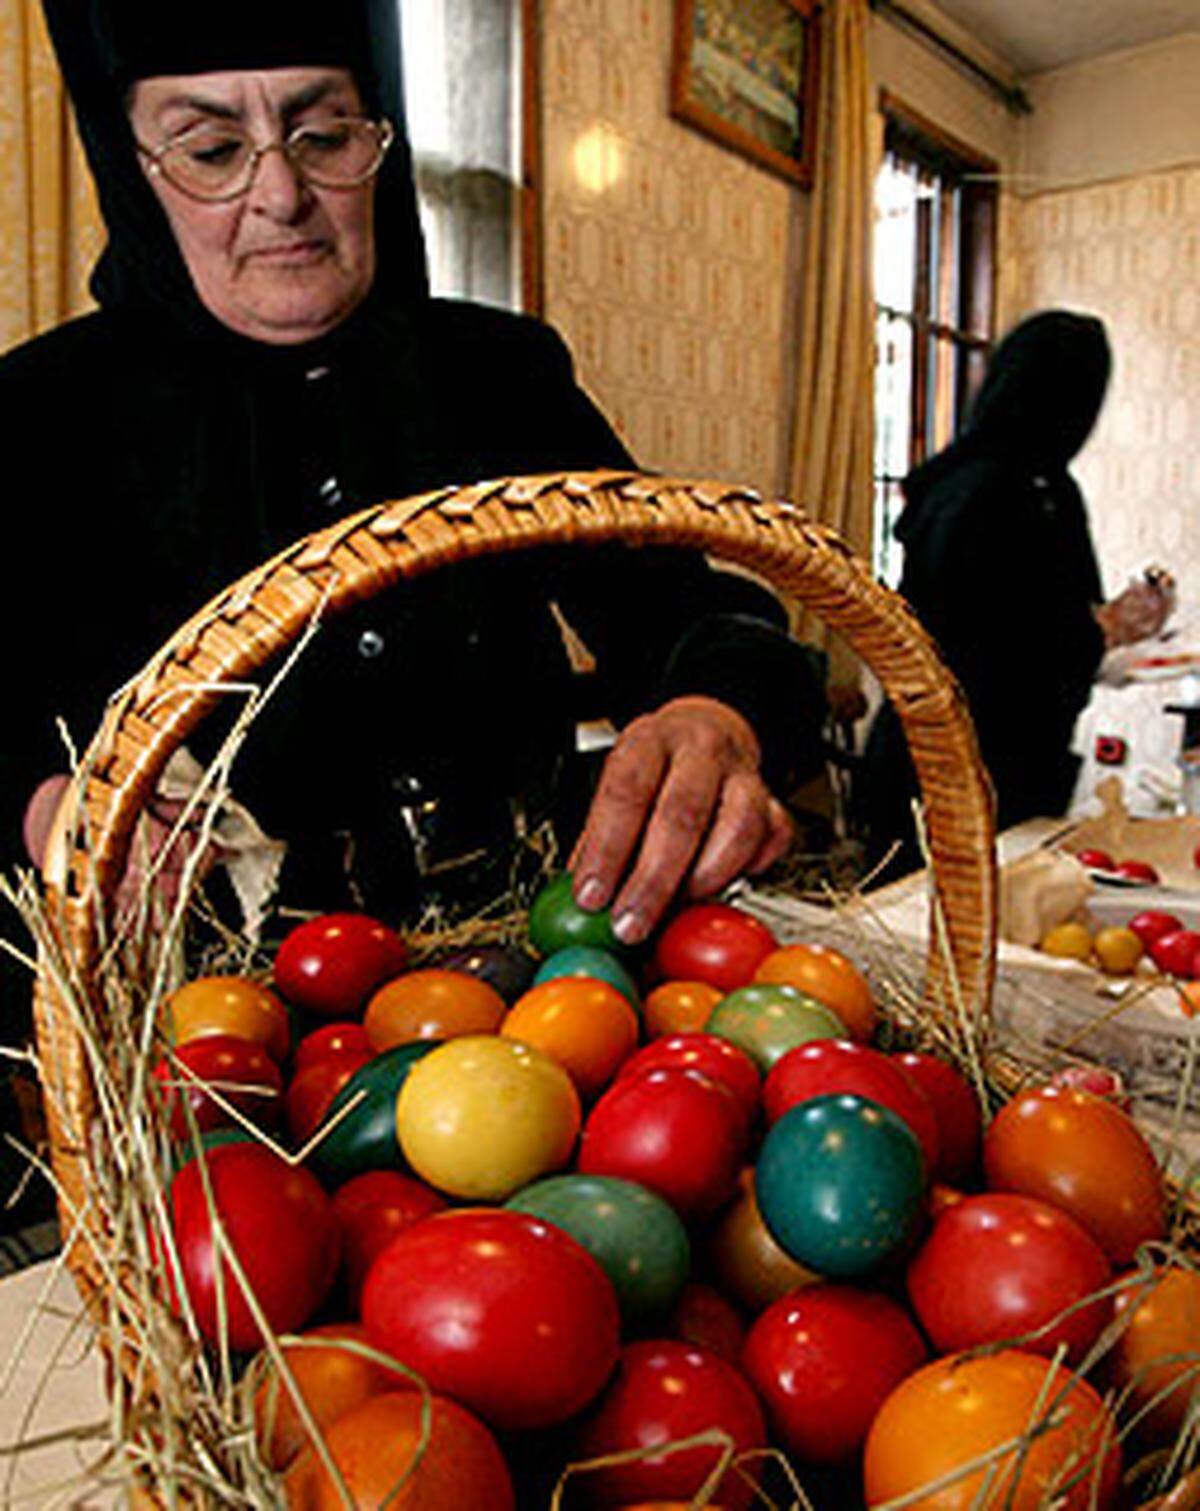 Für die christlich-orthodoxen Bulgaren ist Ostern, nicht Weihnachten, das größte Fest. In dem Balkanland werden die Ostereier am Gründonnerstag gefärbt. Die ersten Eier werden rot gefärbt. Ihnen werden heilende und magische Kräfte zugeschrieben. Am Ostersonntag stoßen die Bulgaren die Eier gegeneinander. Der Besitzer des Eis, das dabei unbeschädigt bleibt, wird nach alter Überlieferung über das ganze Jahr kerngesund sein.